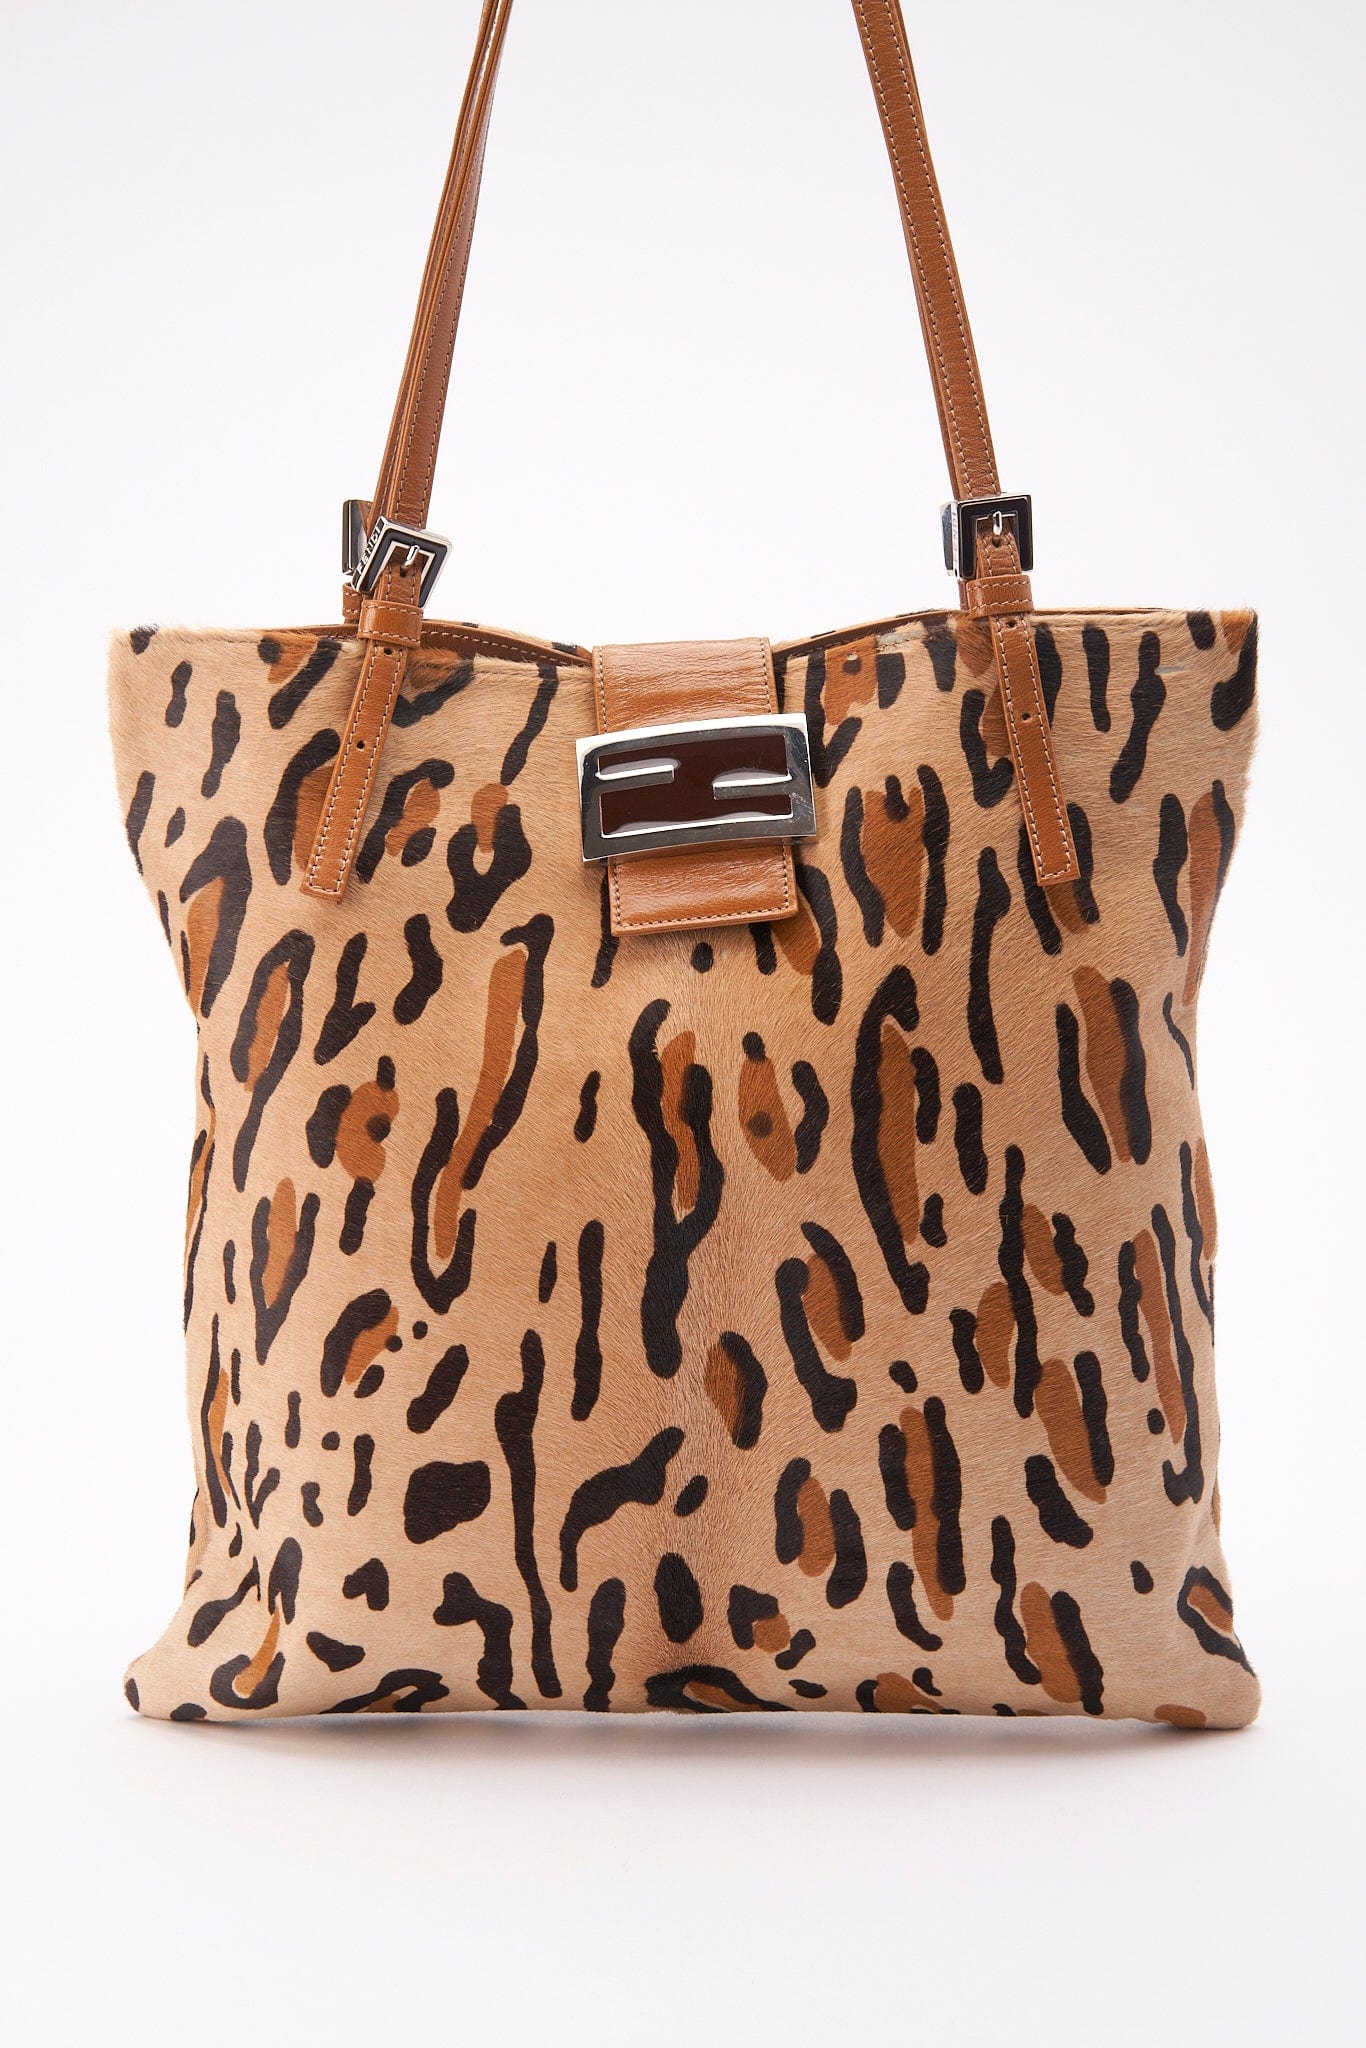 Vintage Fendi Tote Bag in Leopard Print Calf Hair